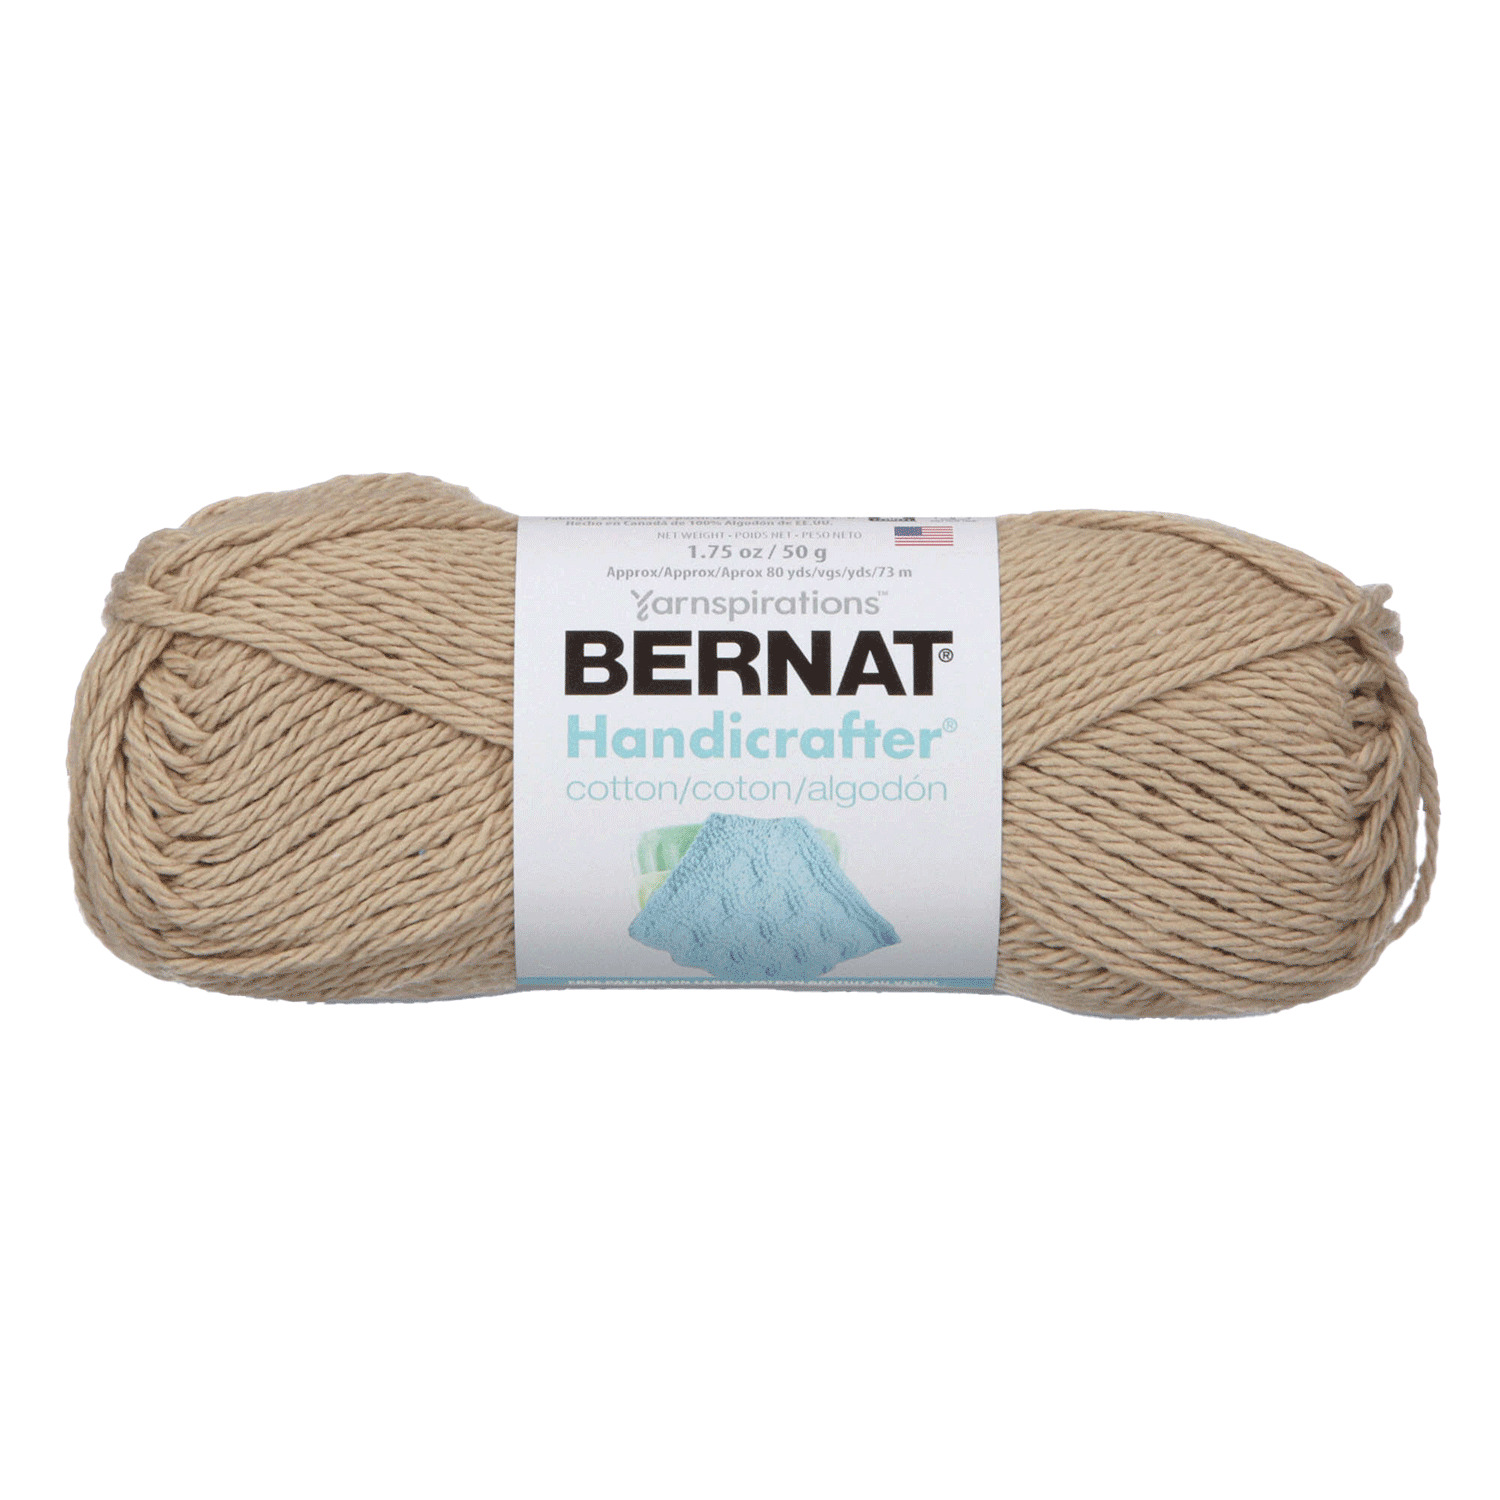 Bernat Handicrafter - Cotton yarn, Jute